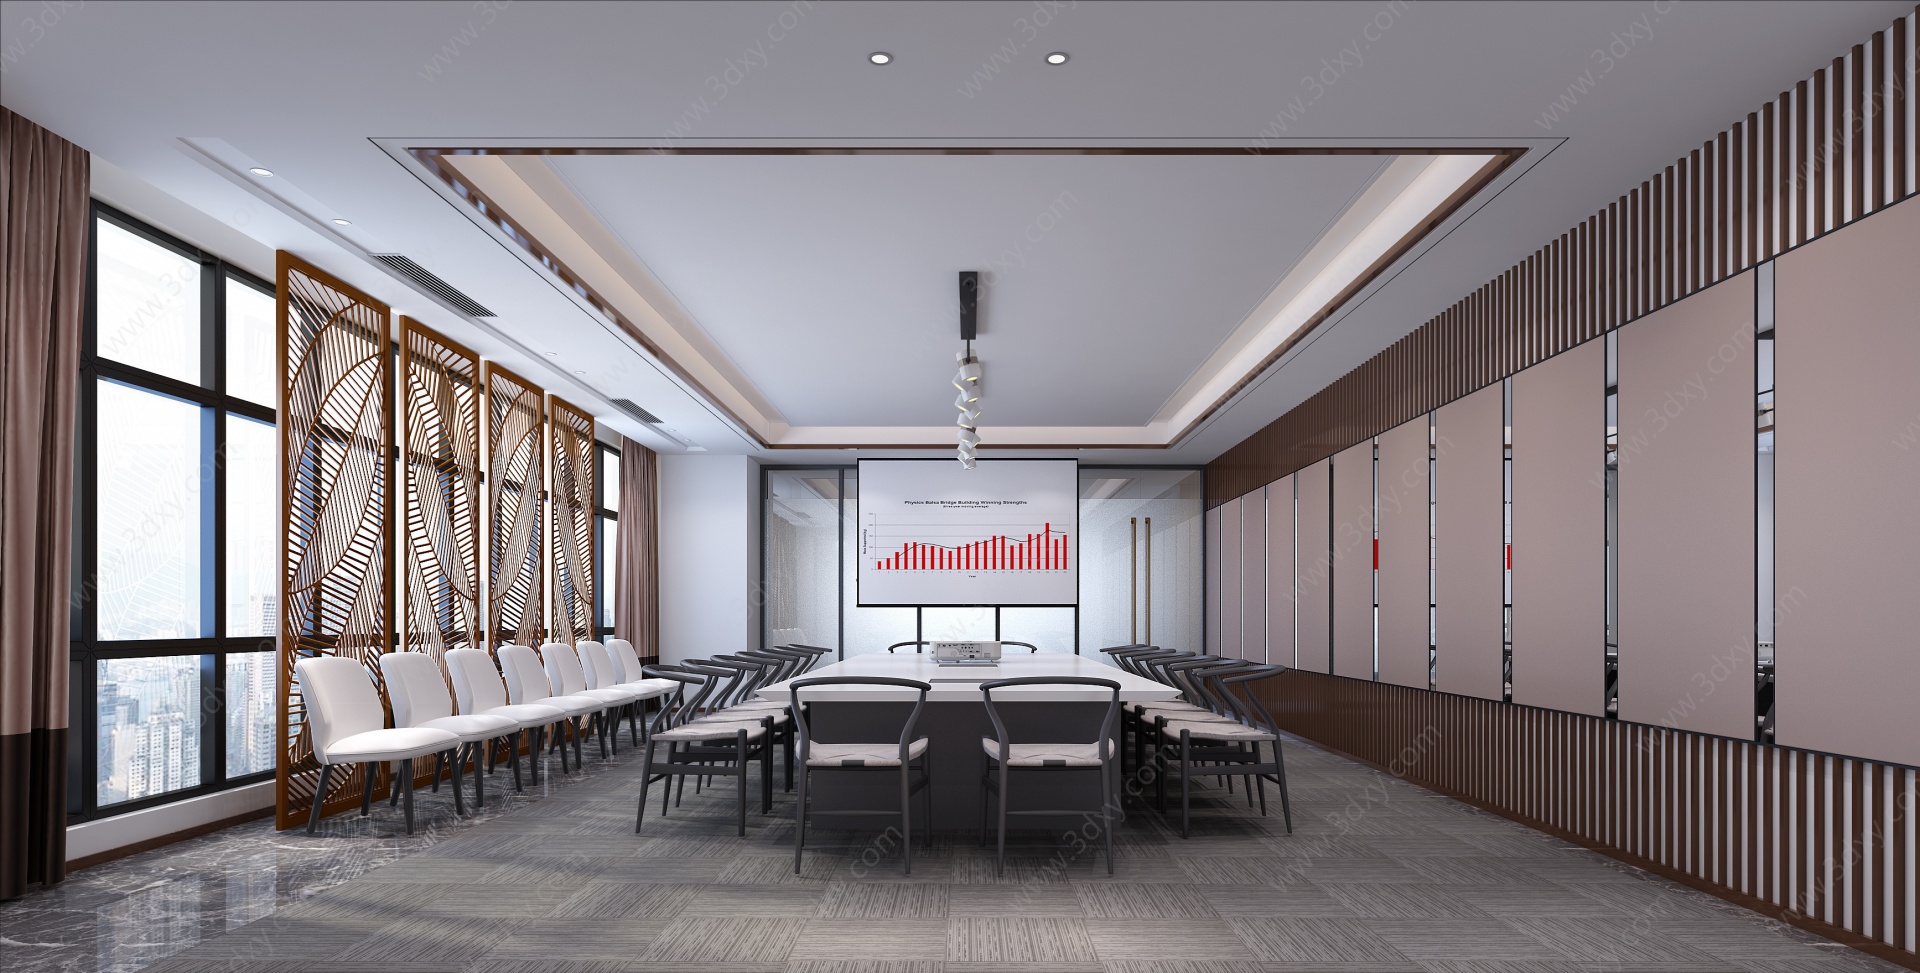 新中式会议室3D模型